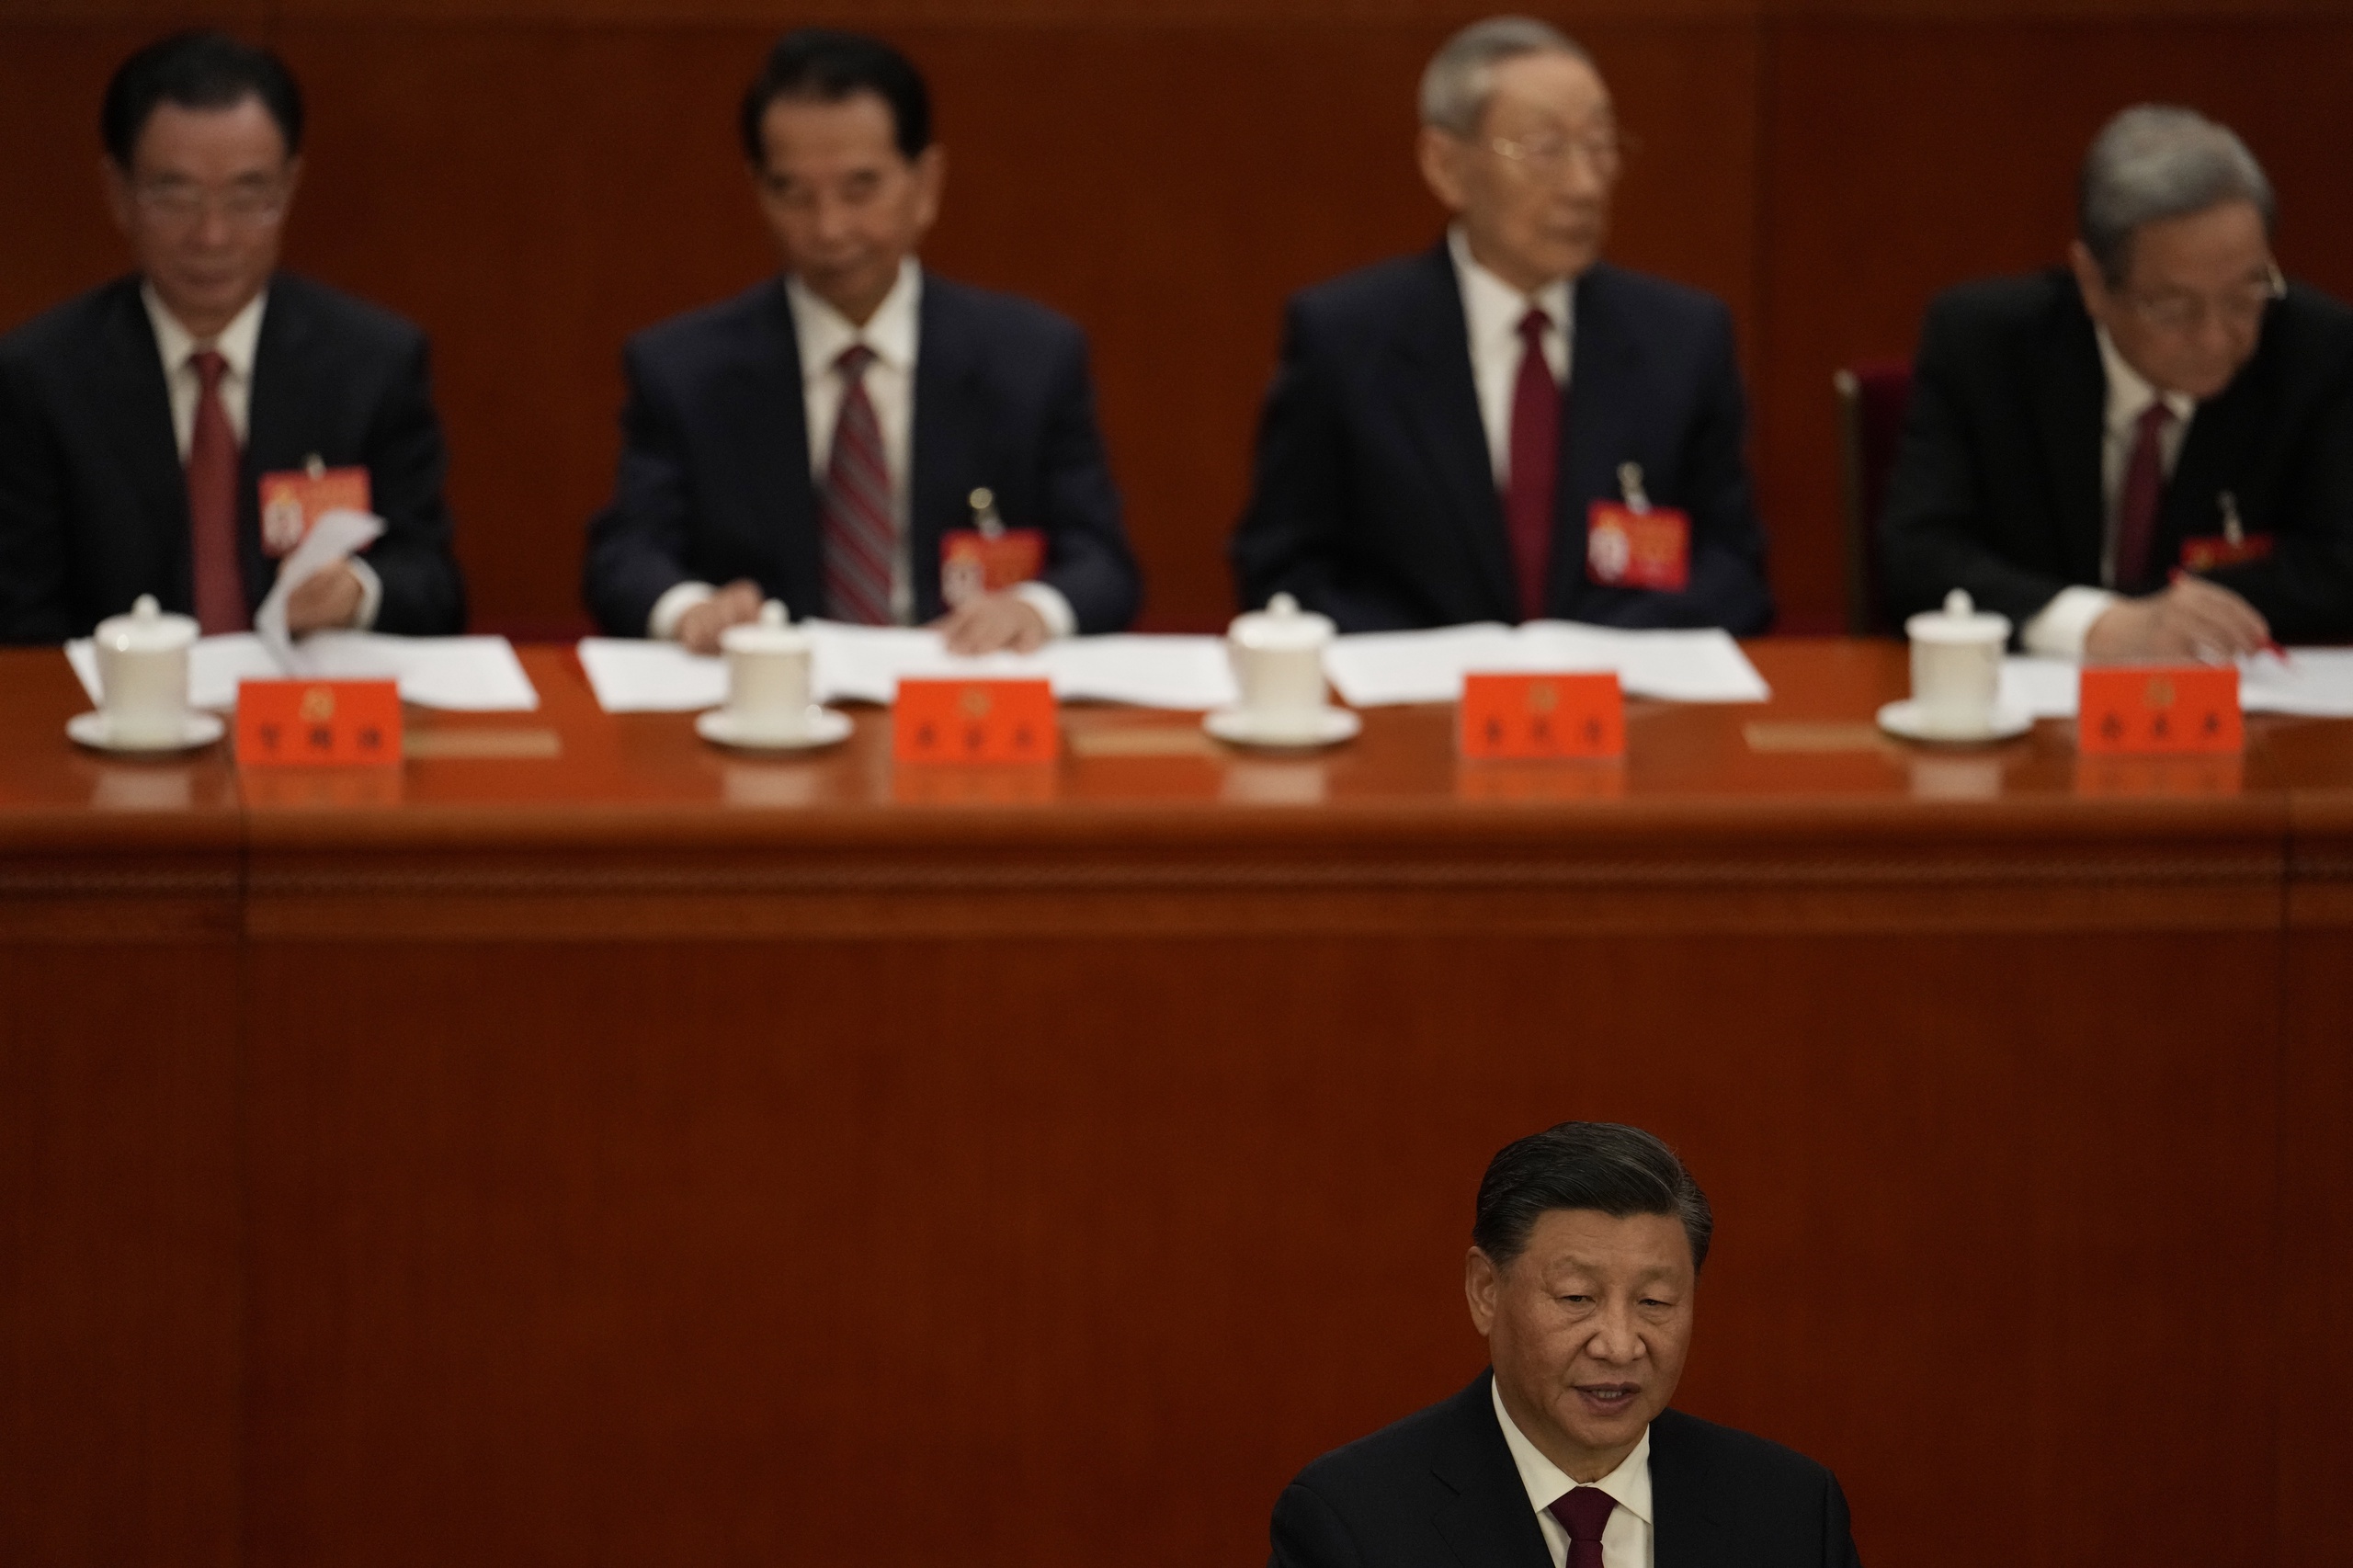 Als Xi een derde termijn van vijf jaar krijgt als secretaris-generaal, is dat een breuk met traditie. Het was de norm dat partijleiders na maximaal twee termijnen stopten. Xi is naast secretaris-generaal ook president van China en haalde eerder al een streep door de regel dat hij in die rol maximaal twee termijnen mag aanblijven.